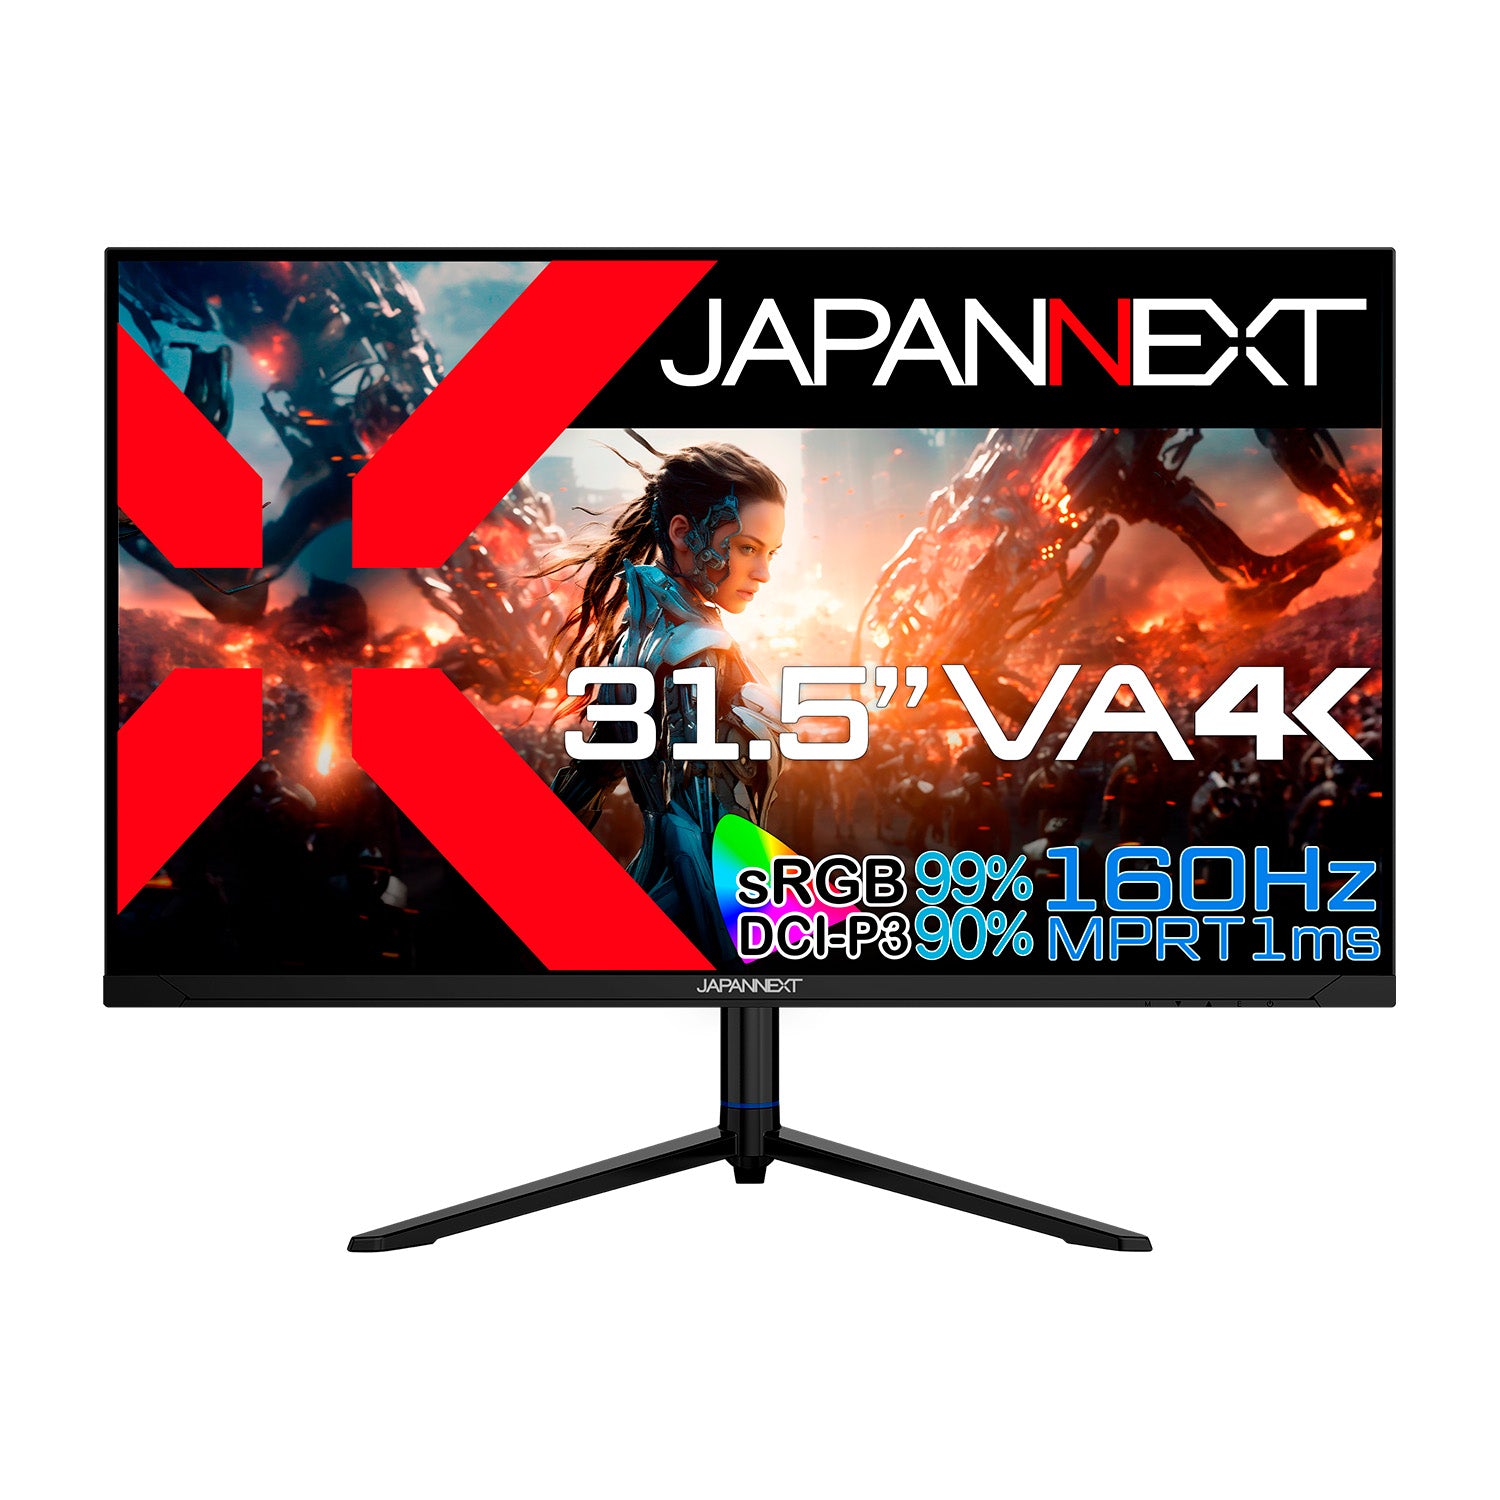 JAPANNEXT 31.5インチ VAパネル搭載 160Hz対応 4K(3840x2160)解像度 